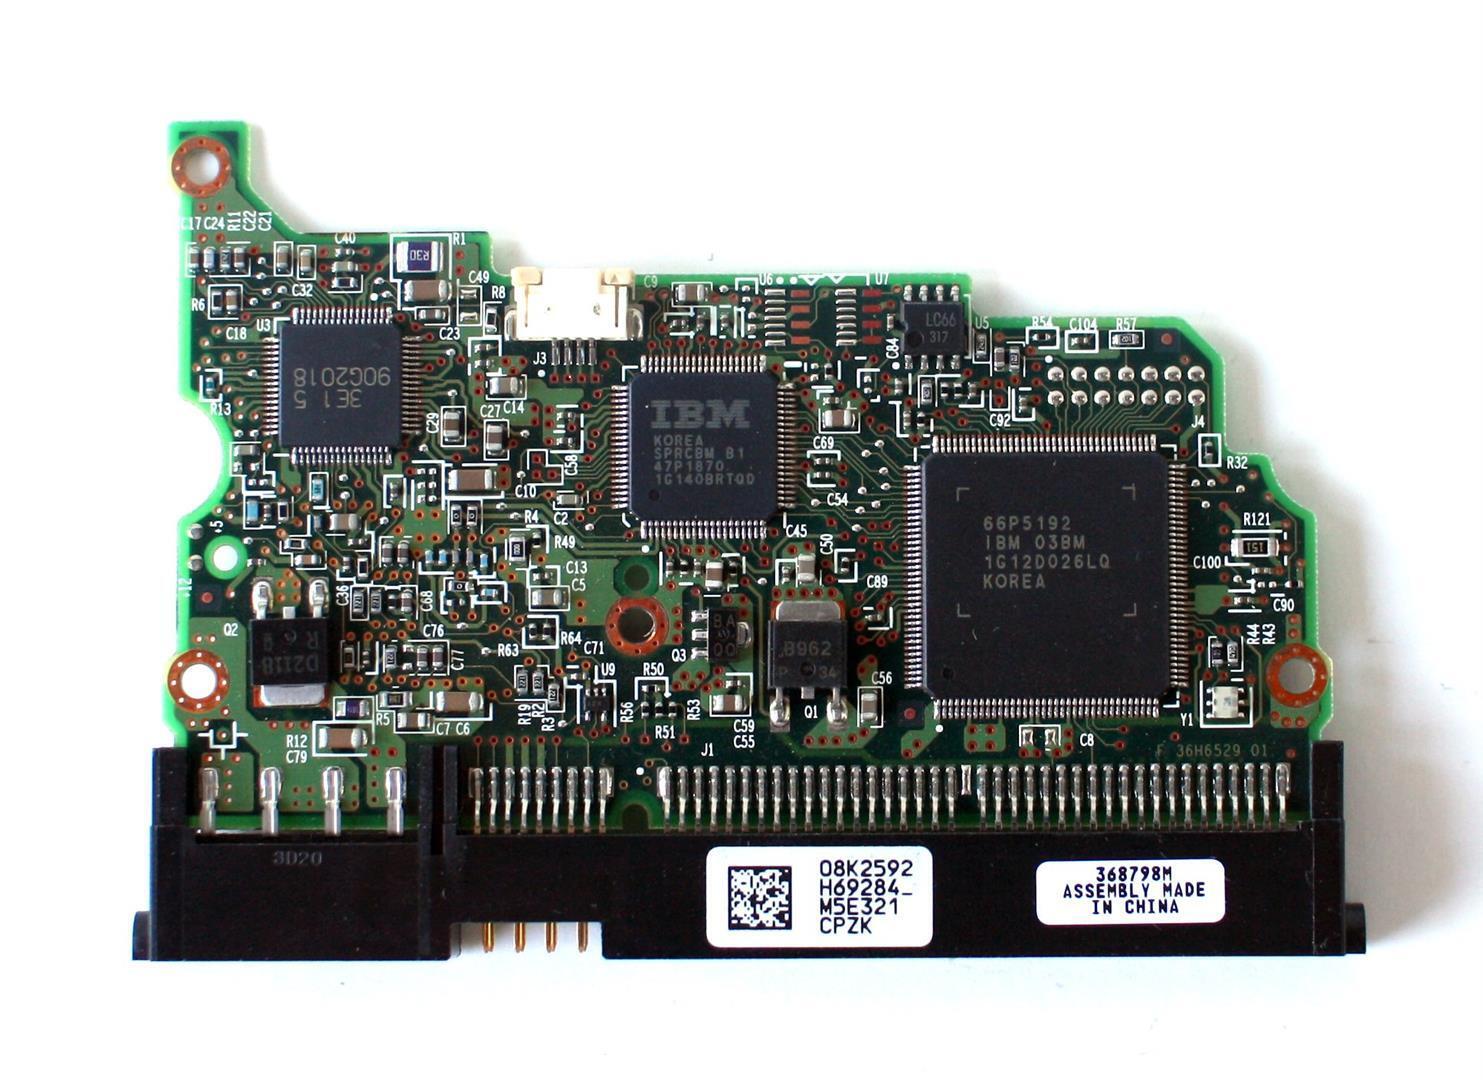 PCB BOARD B 36H6529 01 94V-0 NEP-2, 08K2592 FOR HDD 41.1GB HITACHI IC35L060AV...